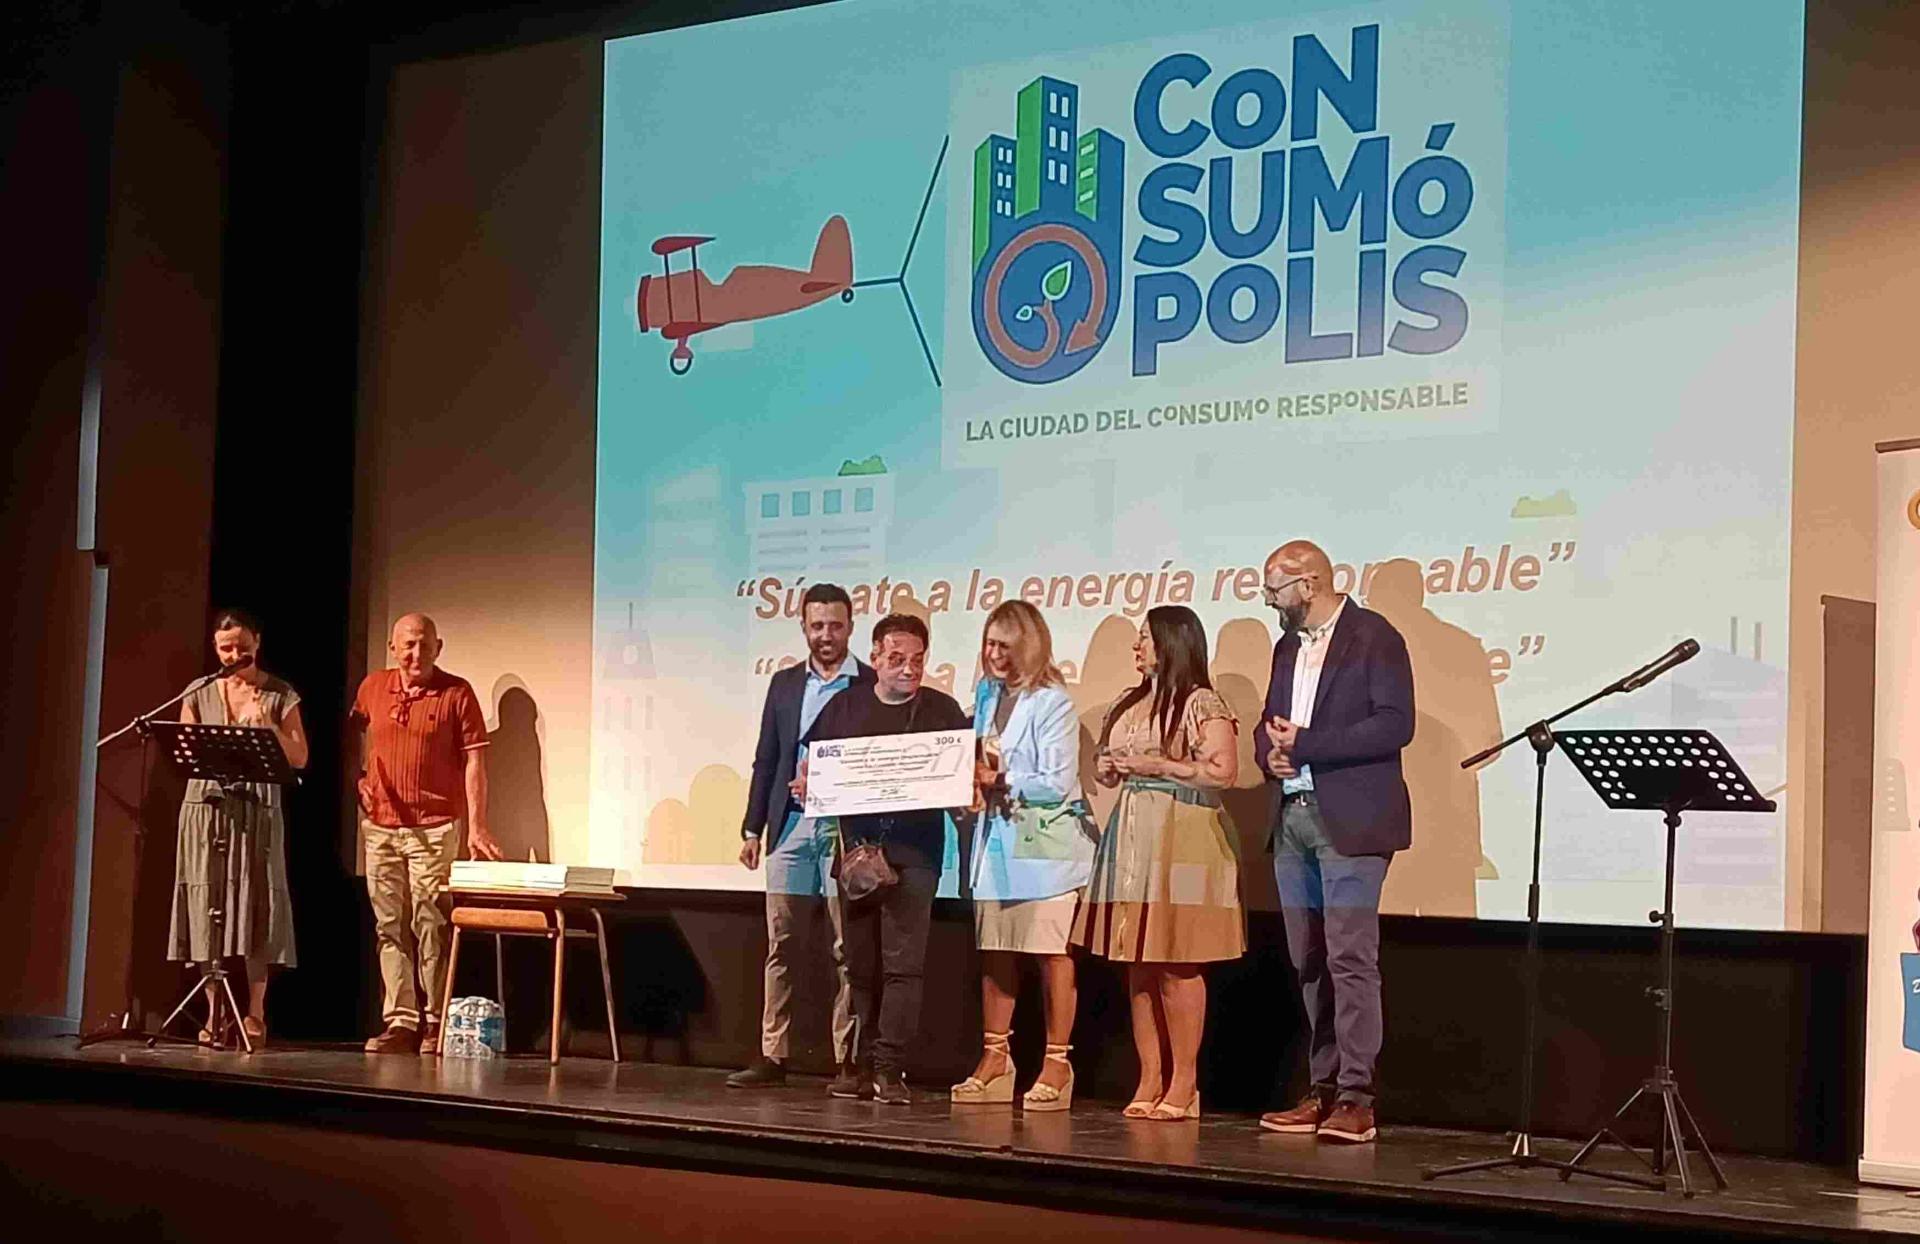 El Figueras Pacheco triunfa en los premios Cosumópolis 19